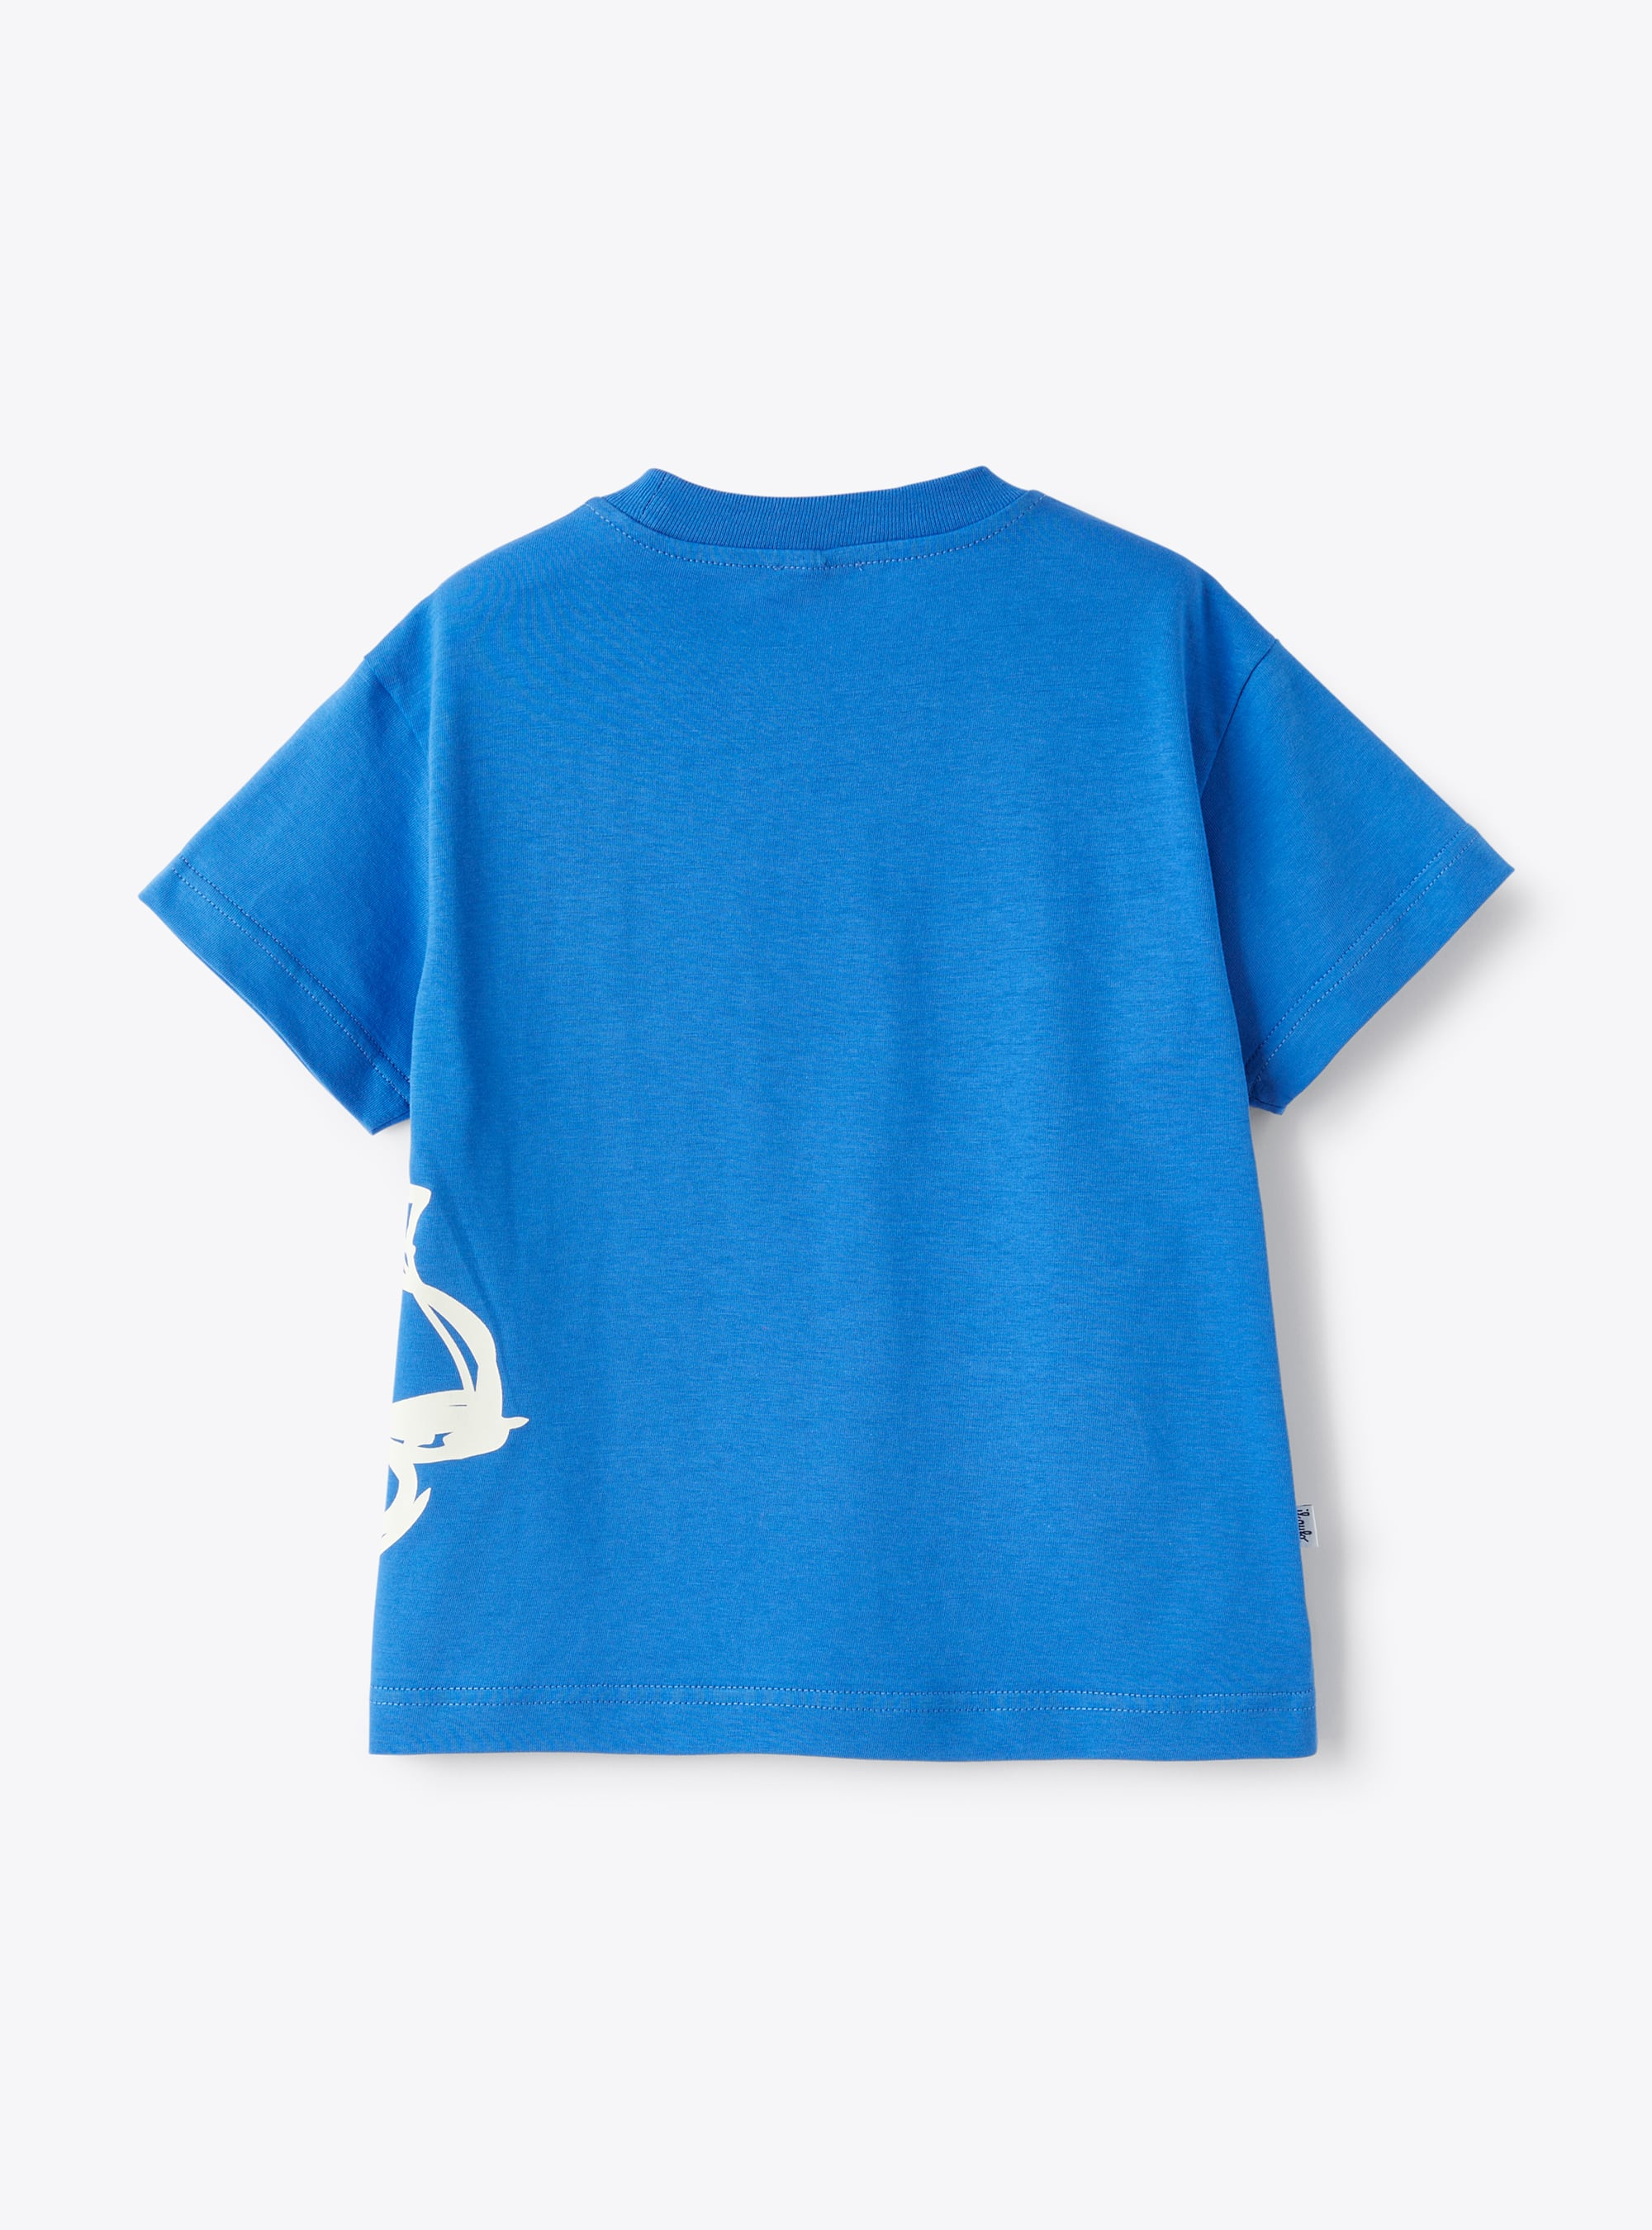 Cobalt-blue t-shirt with Vespa print design  - Light blue | Il Gufo